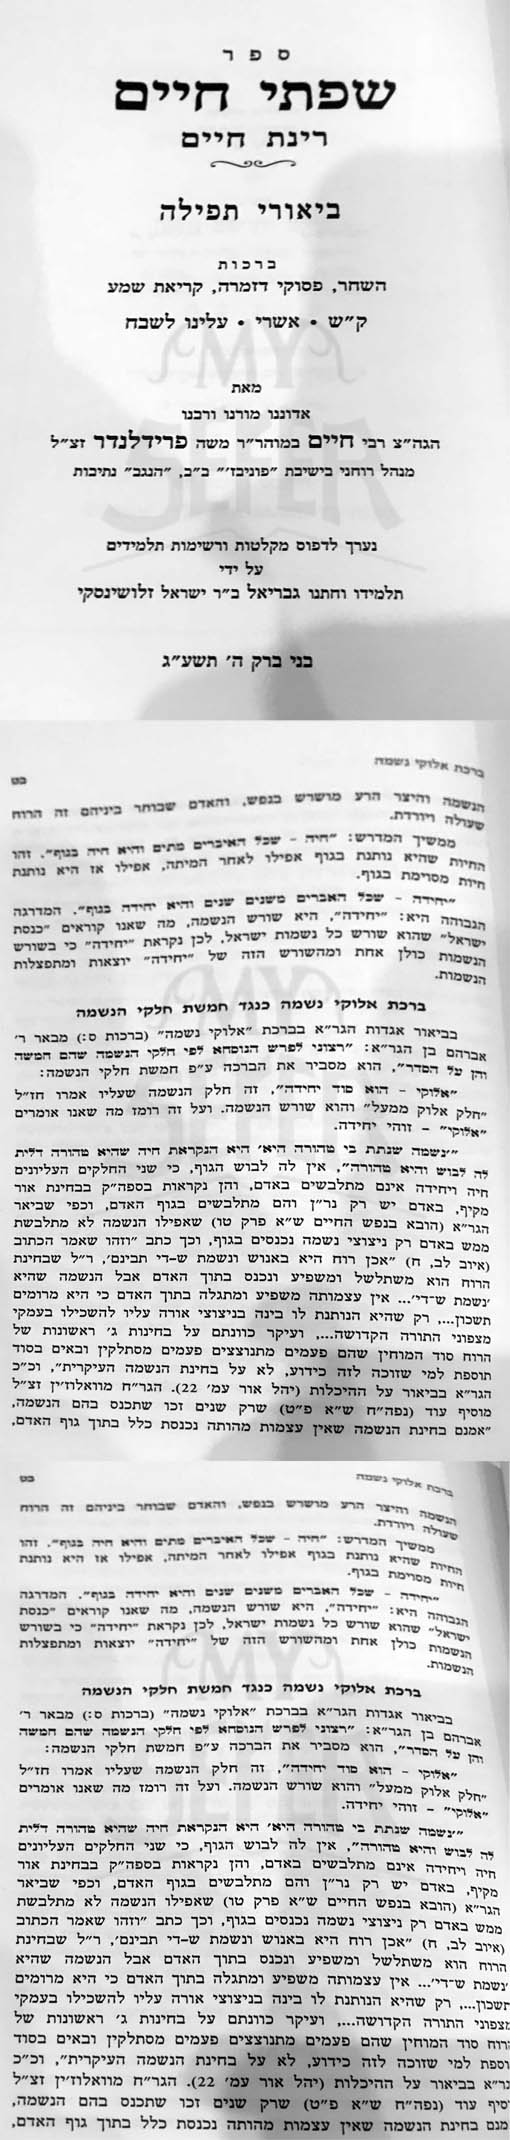 Siftei Chaim : Biurei Tafilat HaShachar (Rabbi Chaim Friedlander)